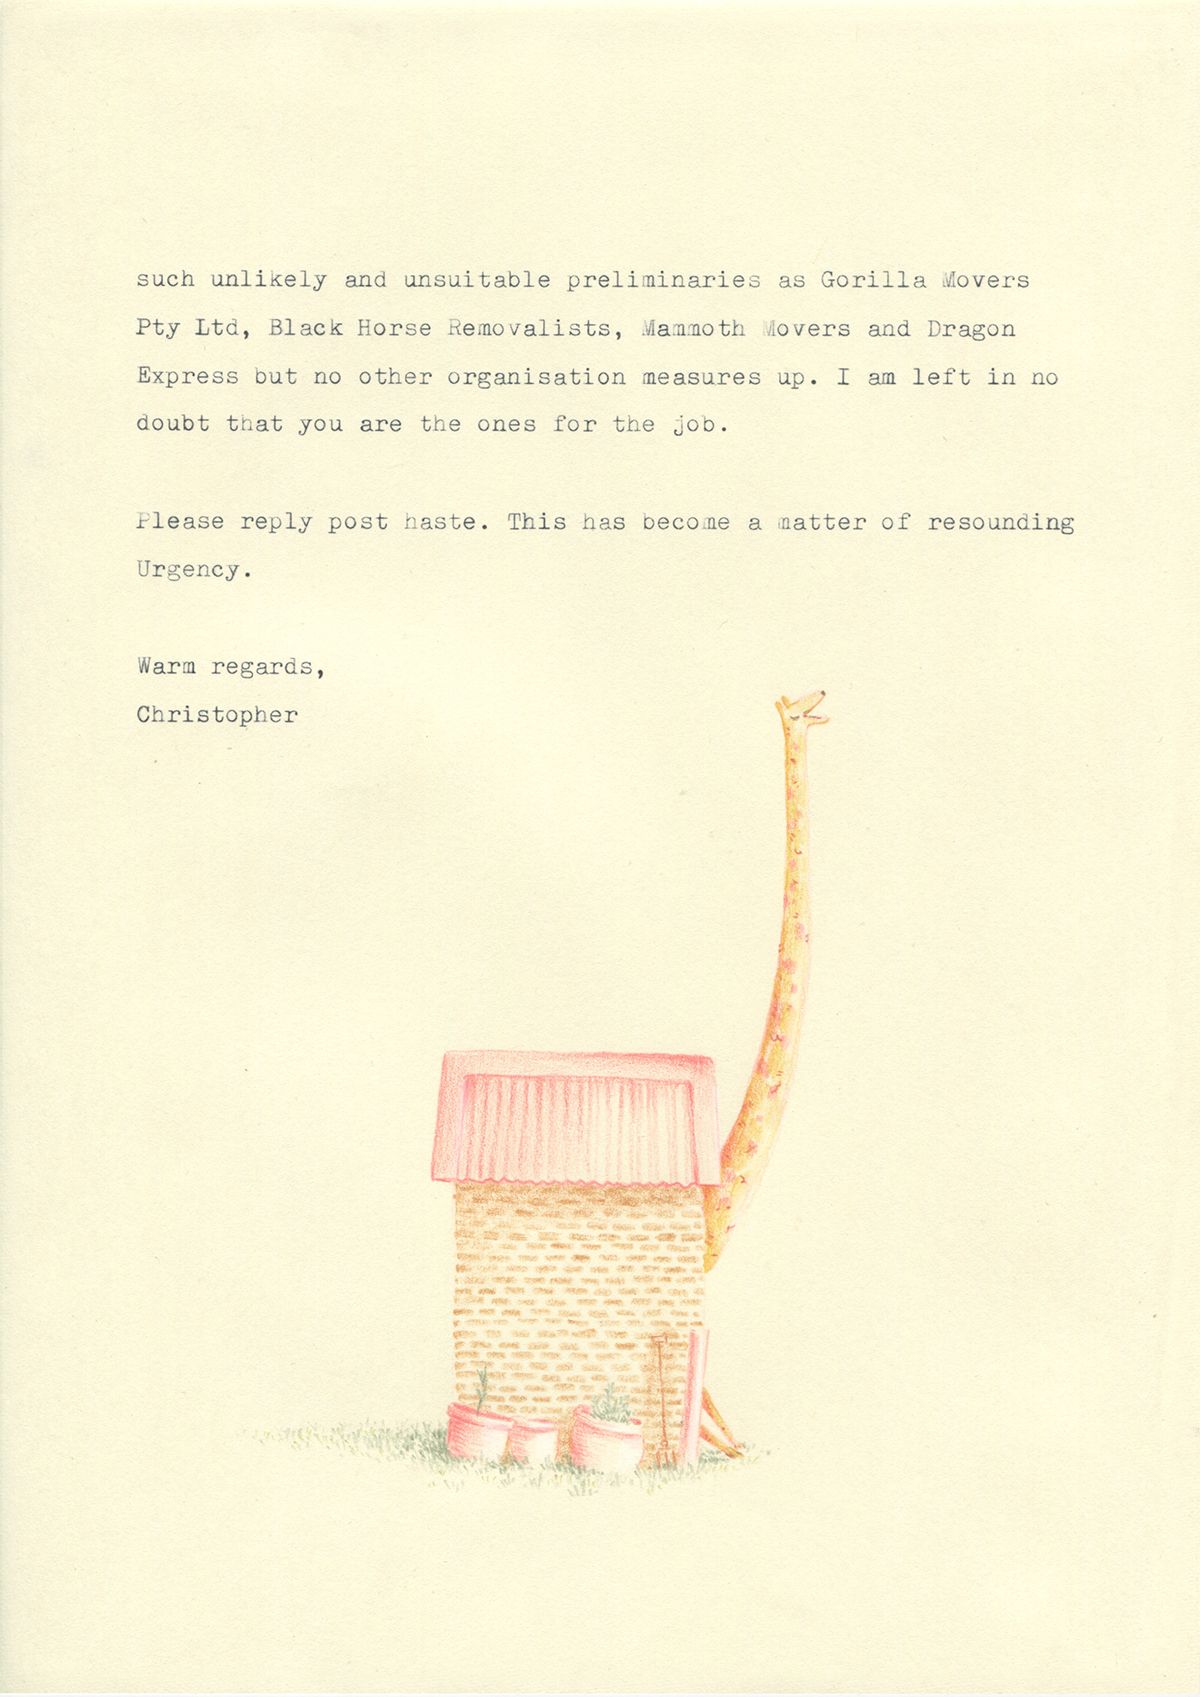 giraffe removals letter ILLUSTRATION  Drawing  animals editorial